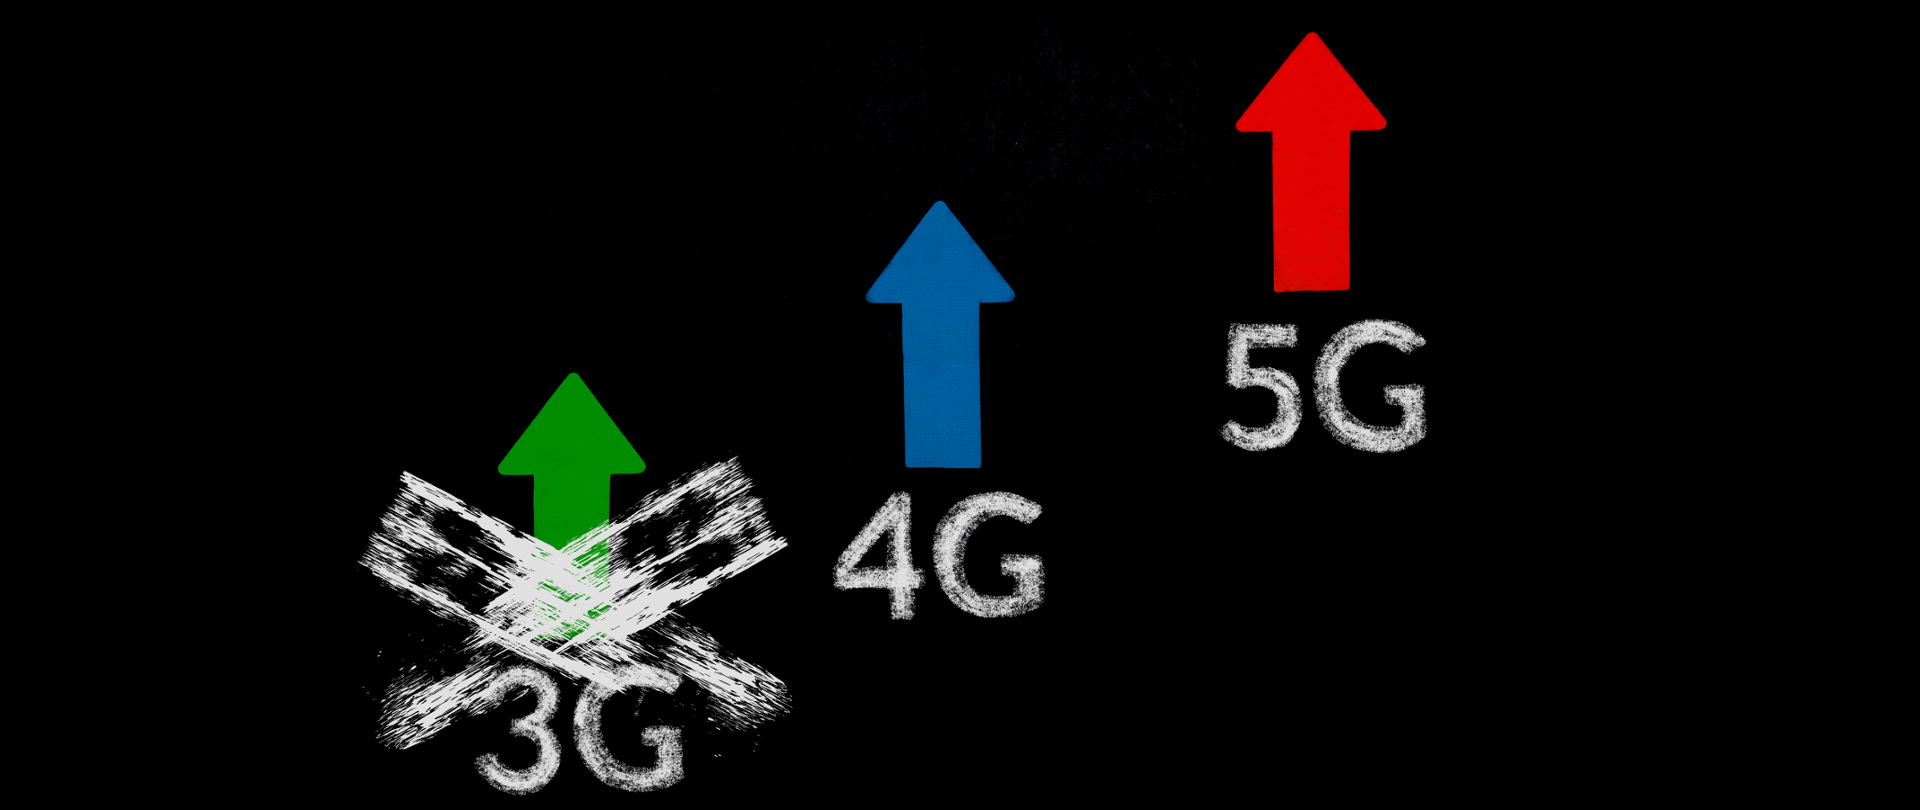 Grafika przedstawiająca symbole 3G, 4G i 5G - symbol 3G - przekreślony